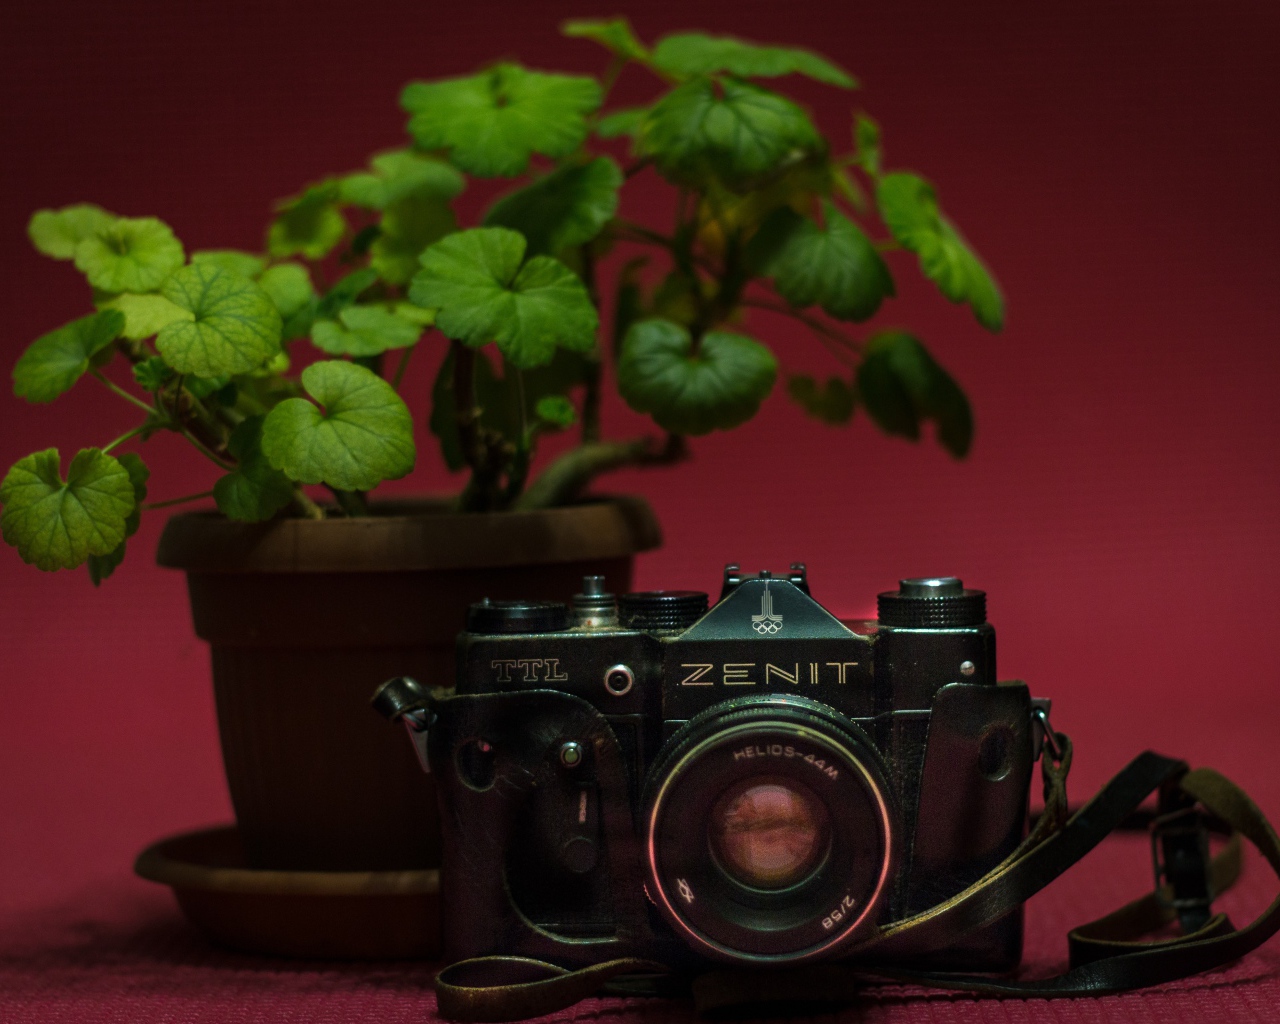 Старый фотоаппарат zenit на столе с цветком герани